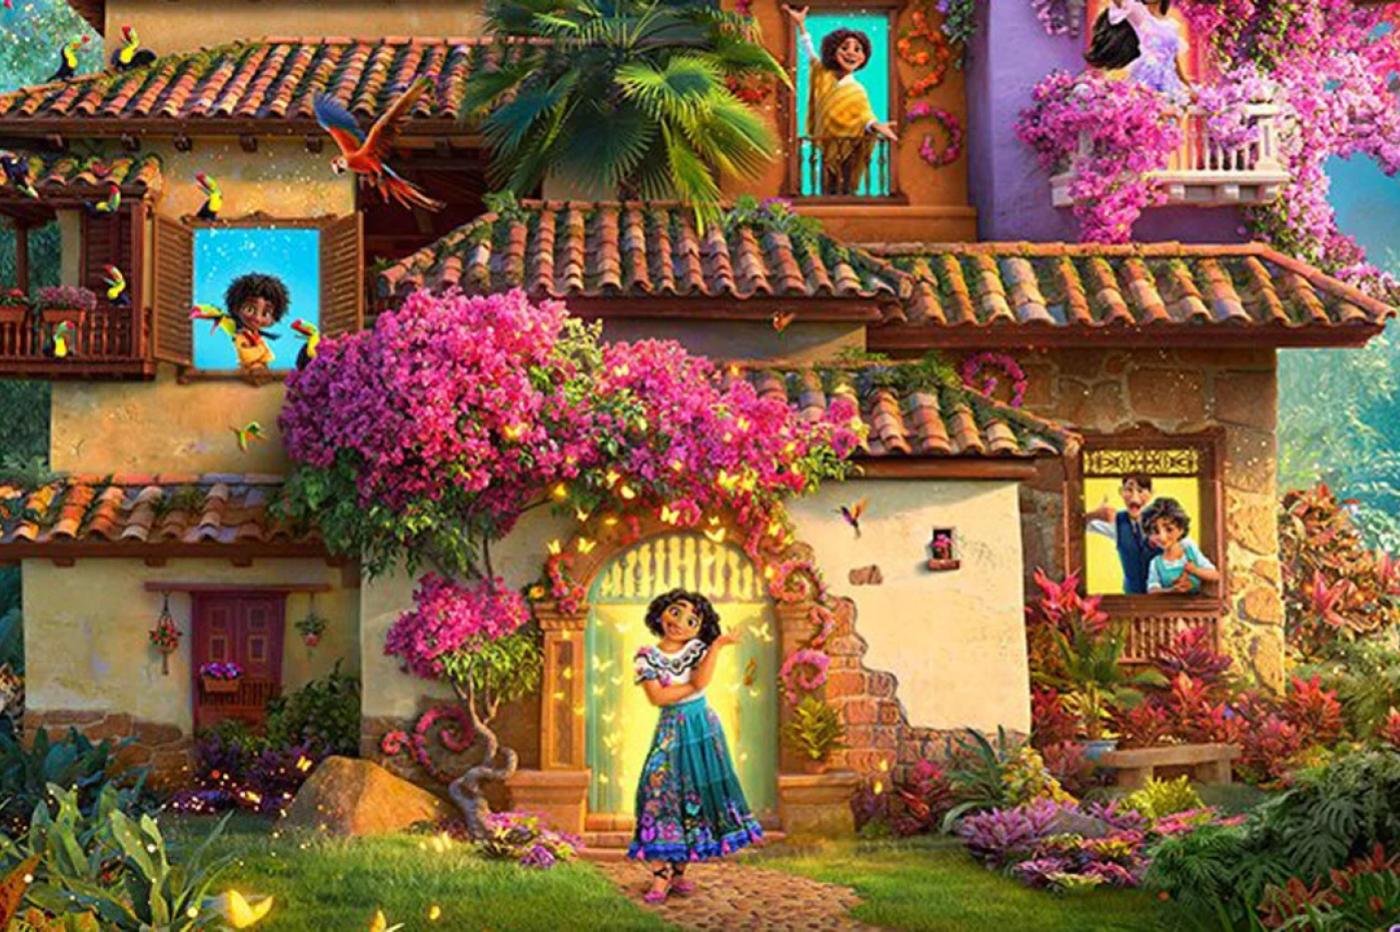 Disney sigue llevándonos de viaje con su nueva película "Encanto" de la que aquí está el tráiler.